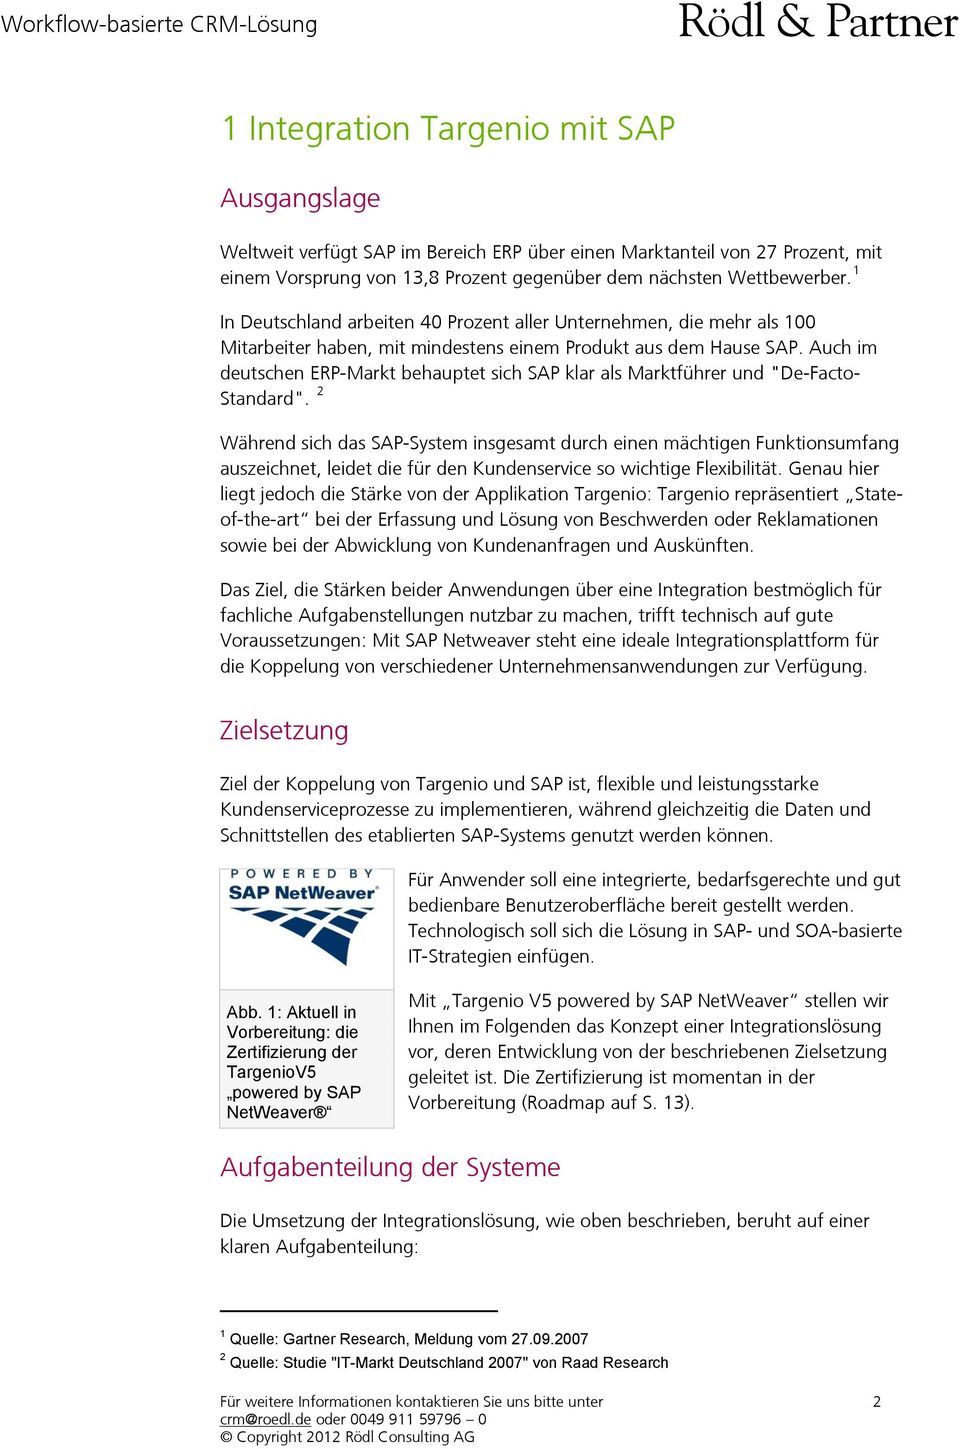 Auch im deutschen ERP-Markt behauptet sich SAP klar als Marktführer und "De-Facto- Standard".